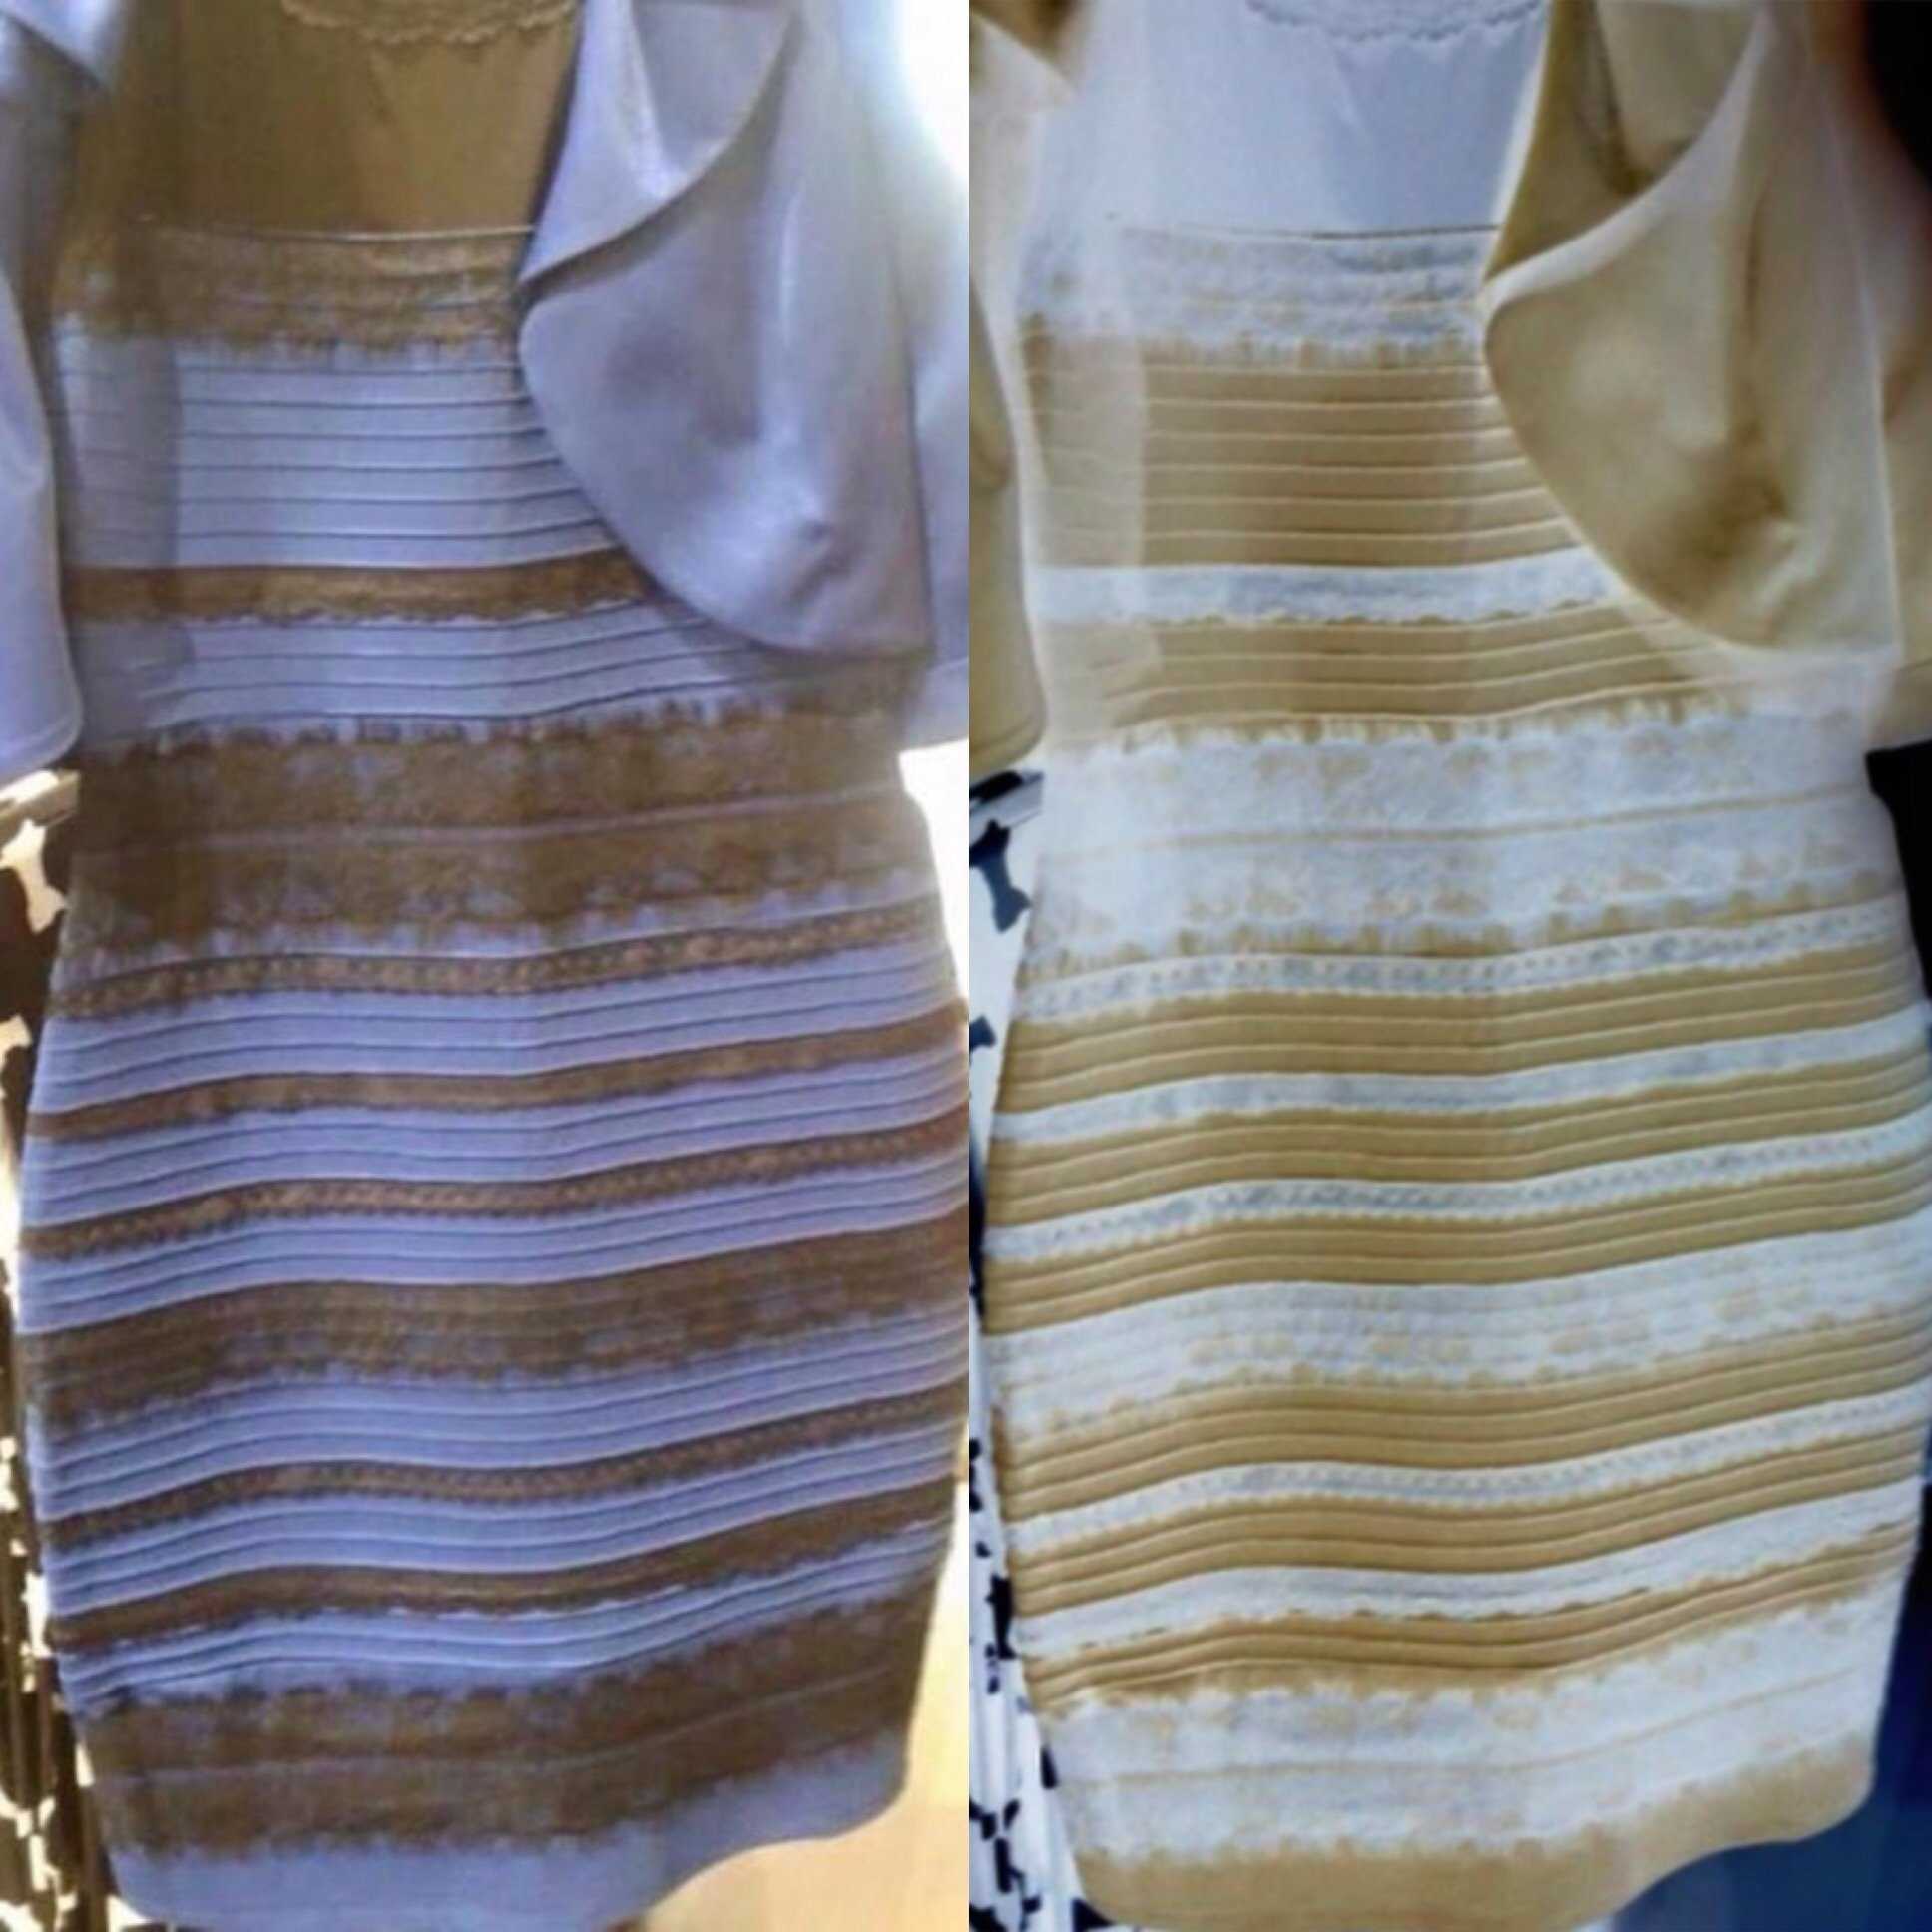 Так какого цвета платье на самом деле?